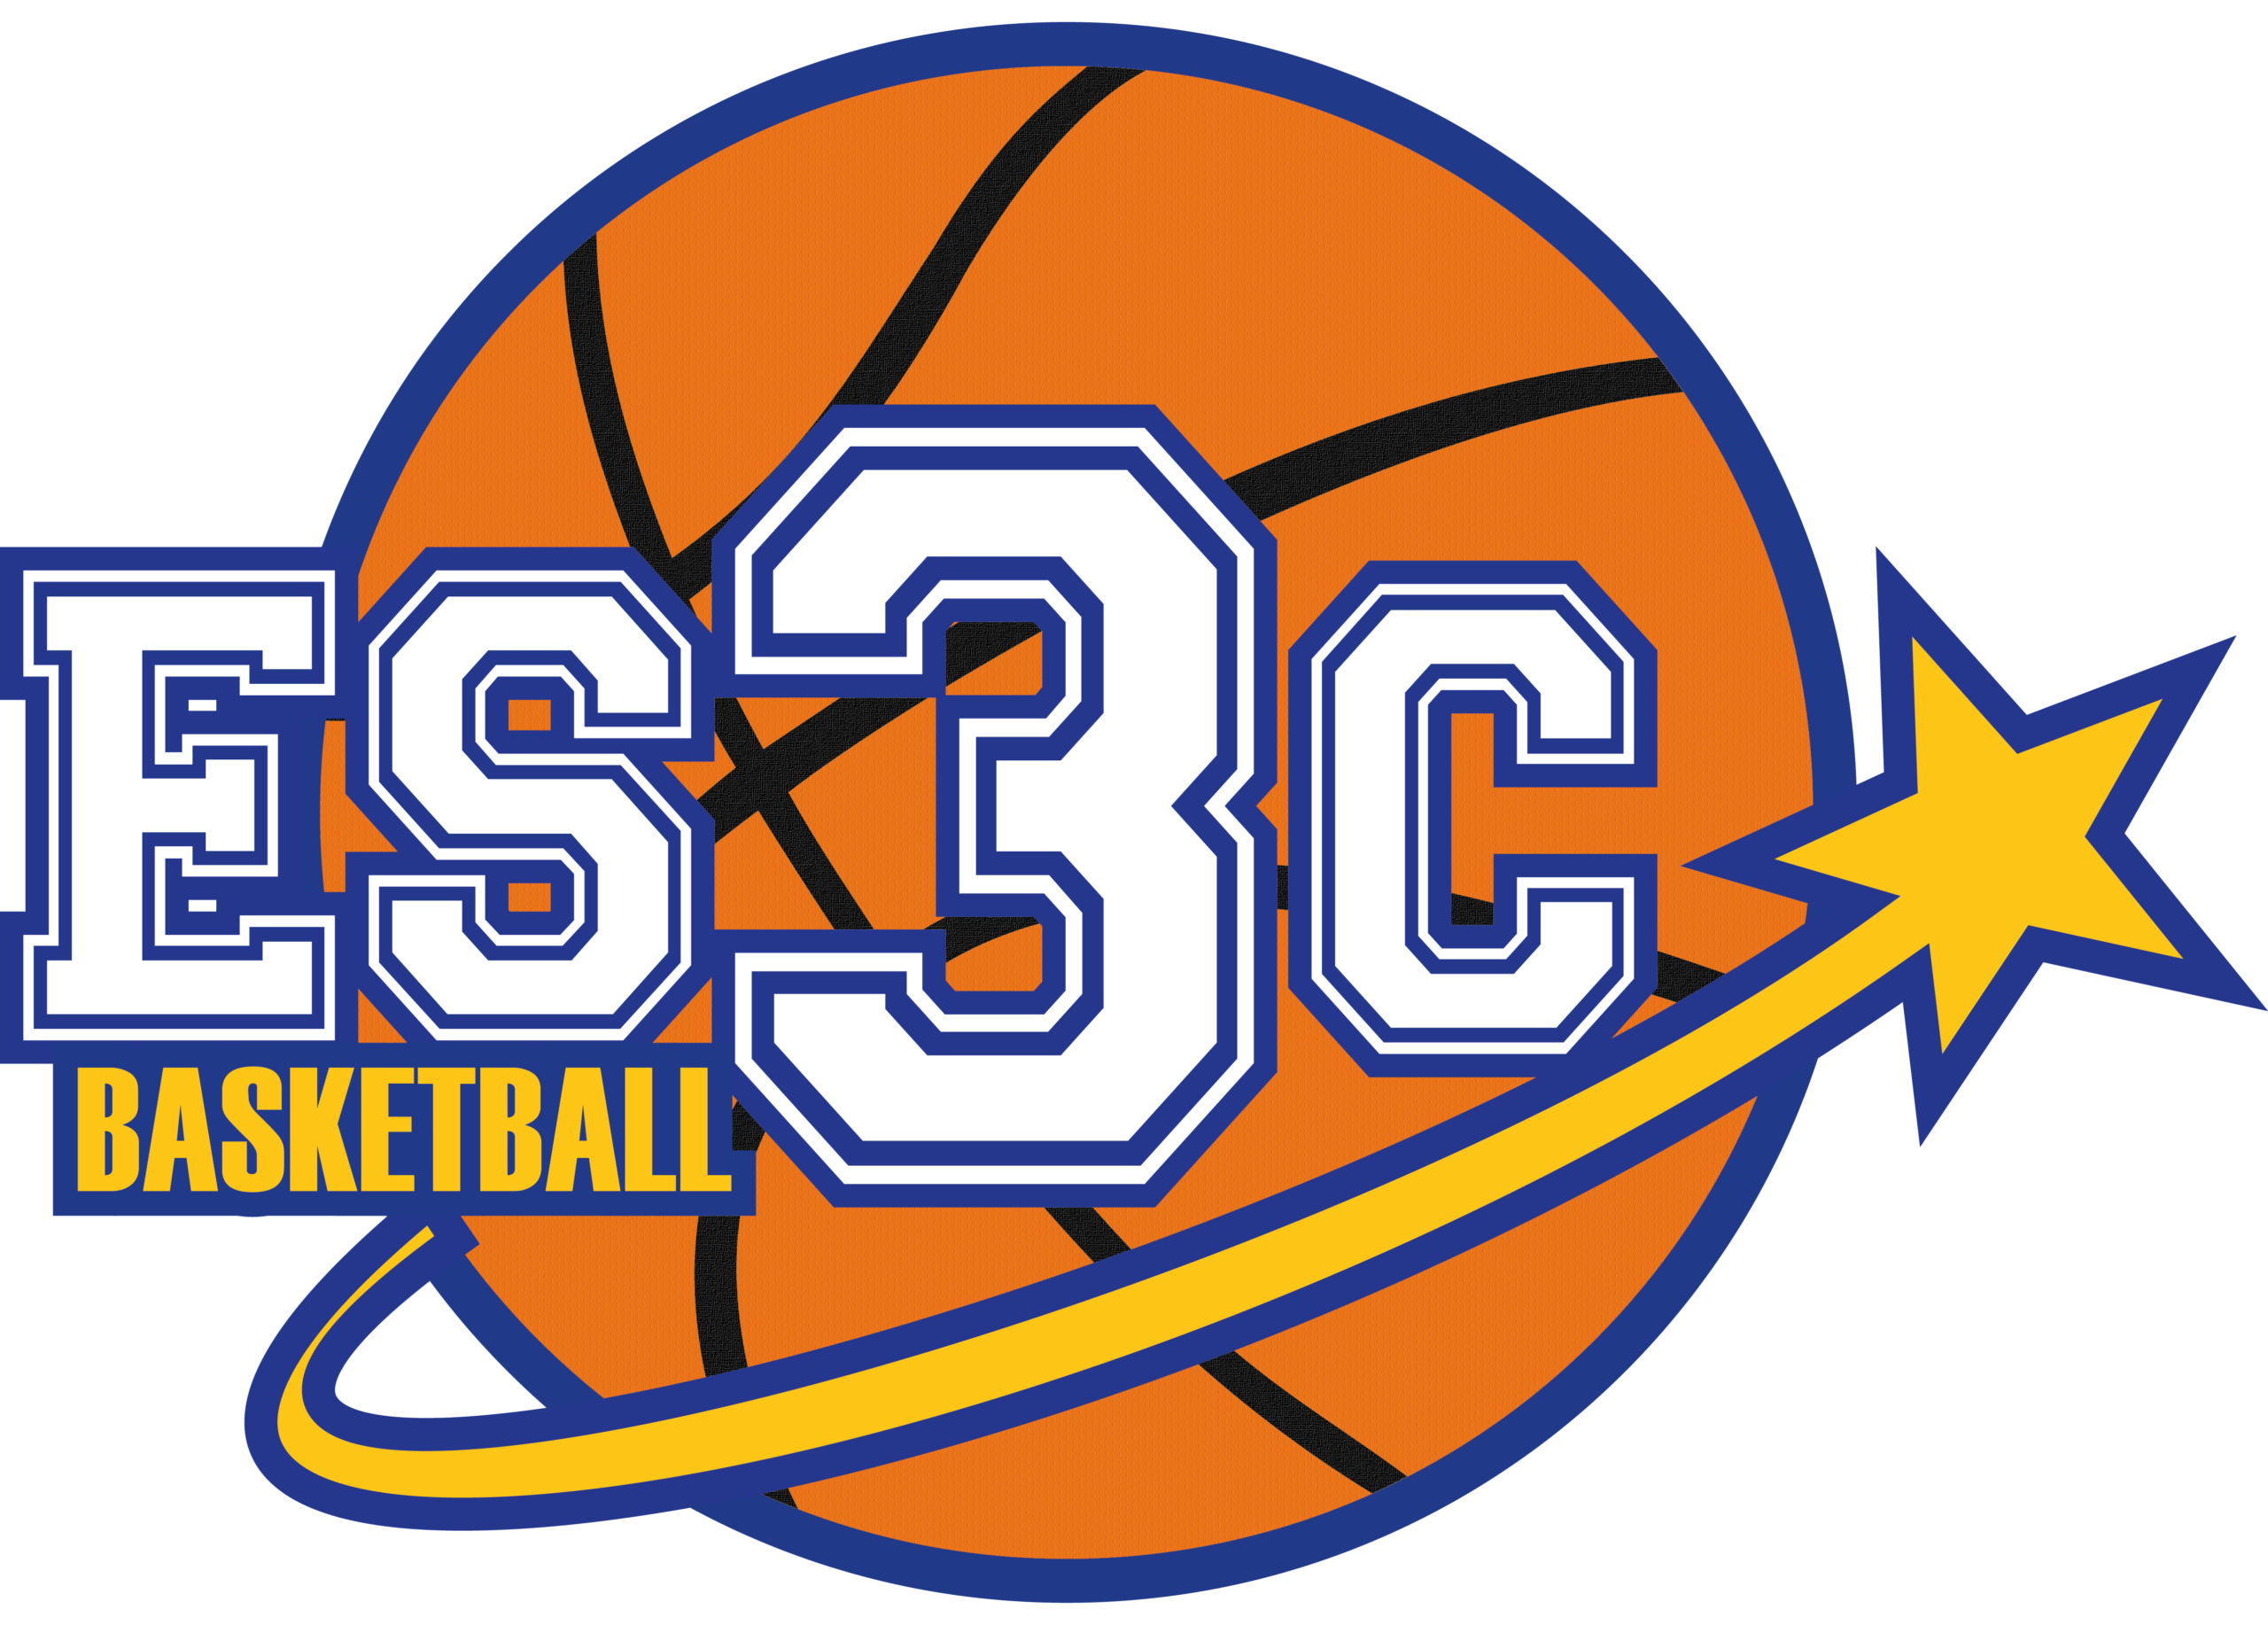 ES3C Basketball, partenaire de AFIWAI DESIGN, Création de site internet, Graphisme, Vidéo à Blois